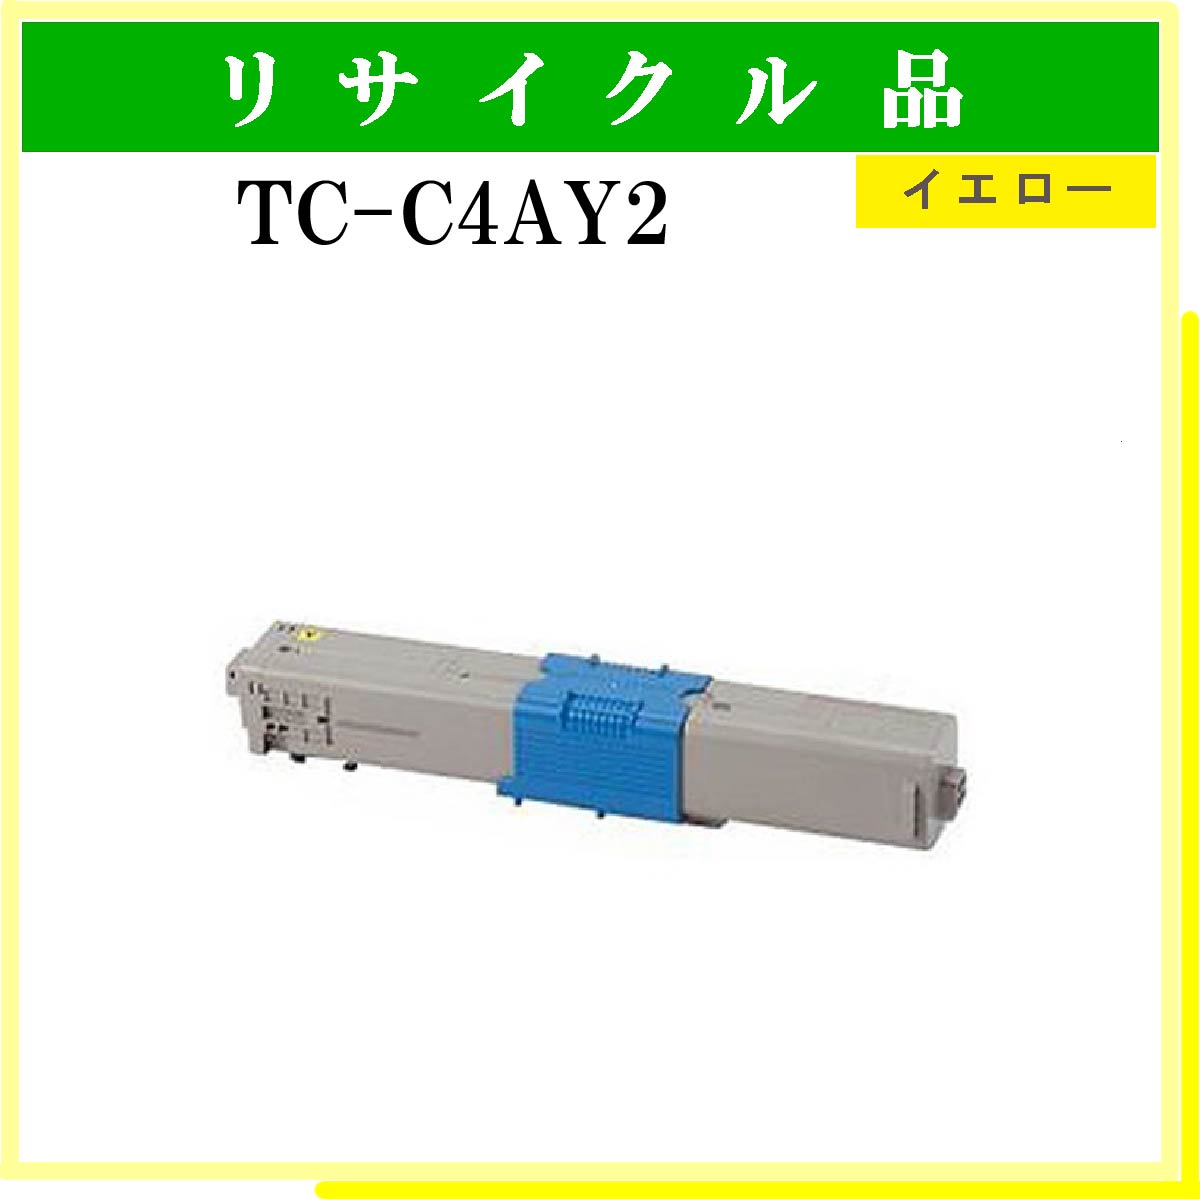 TC-C4AY2